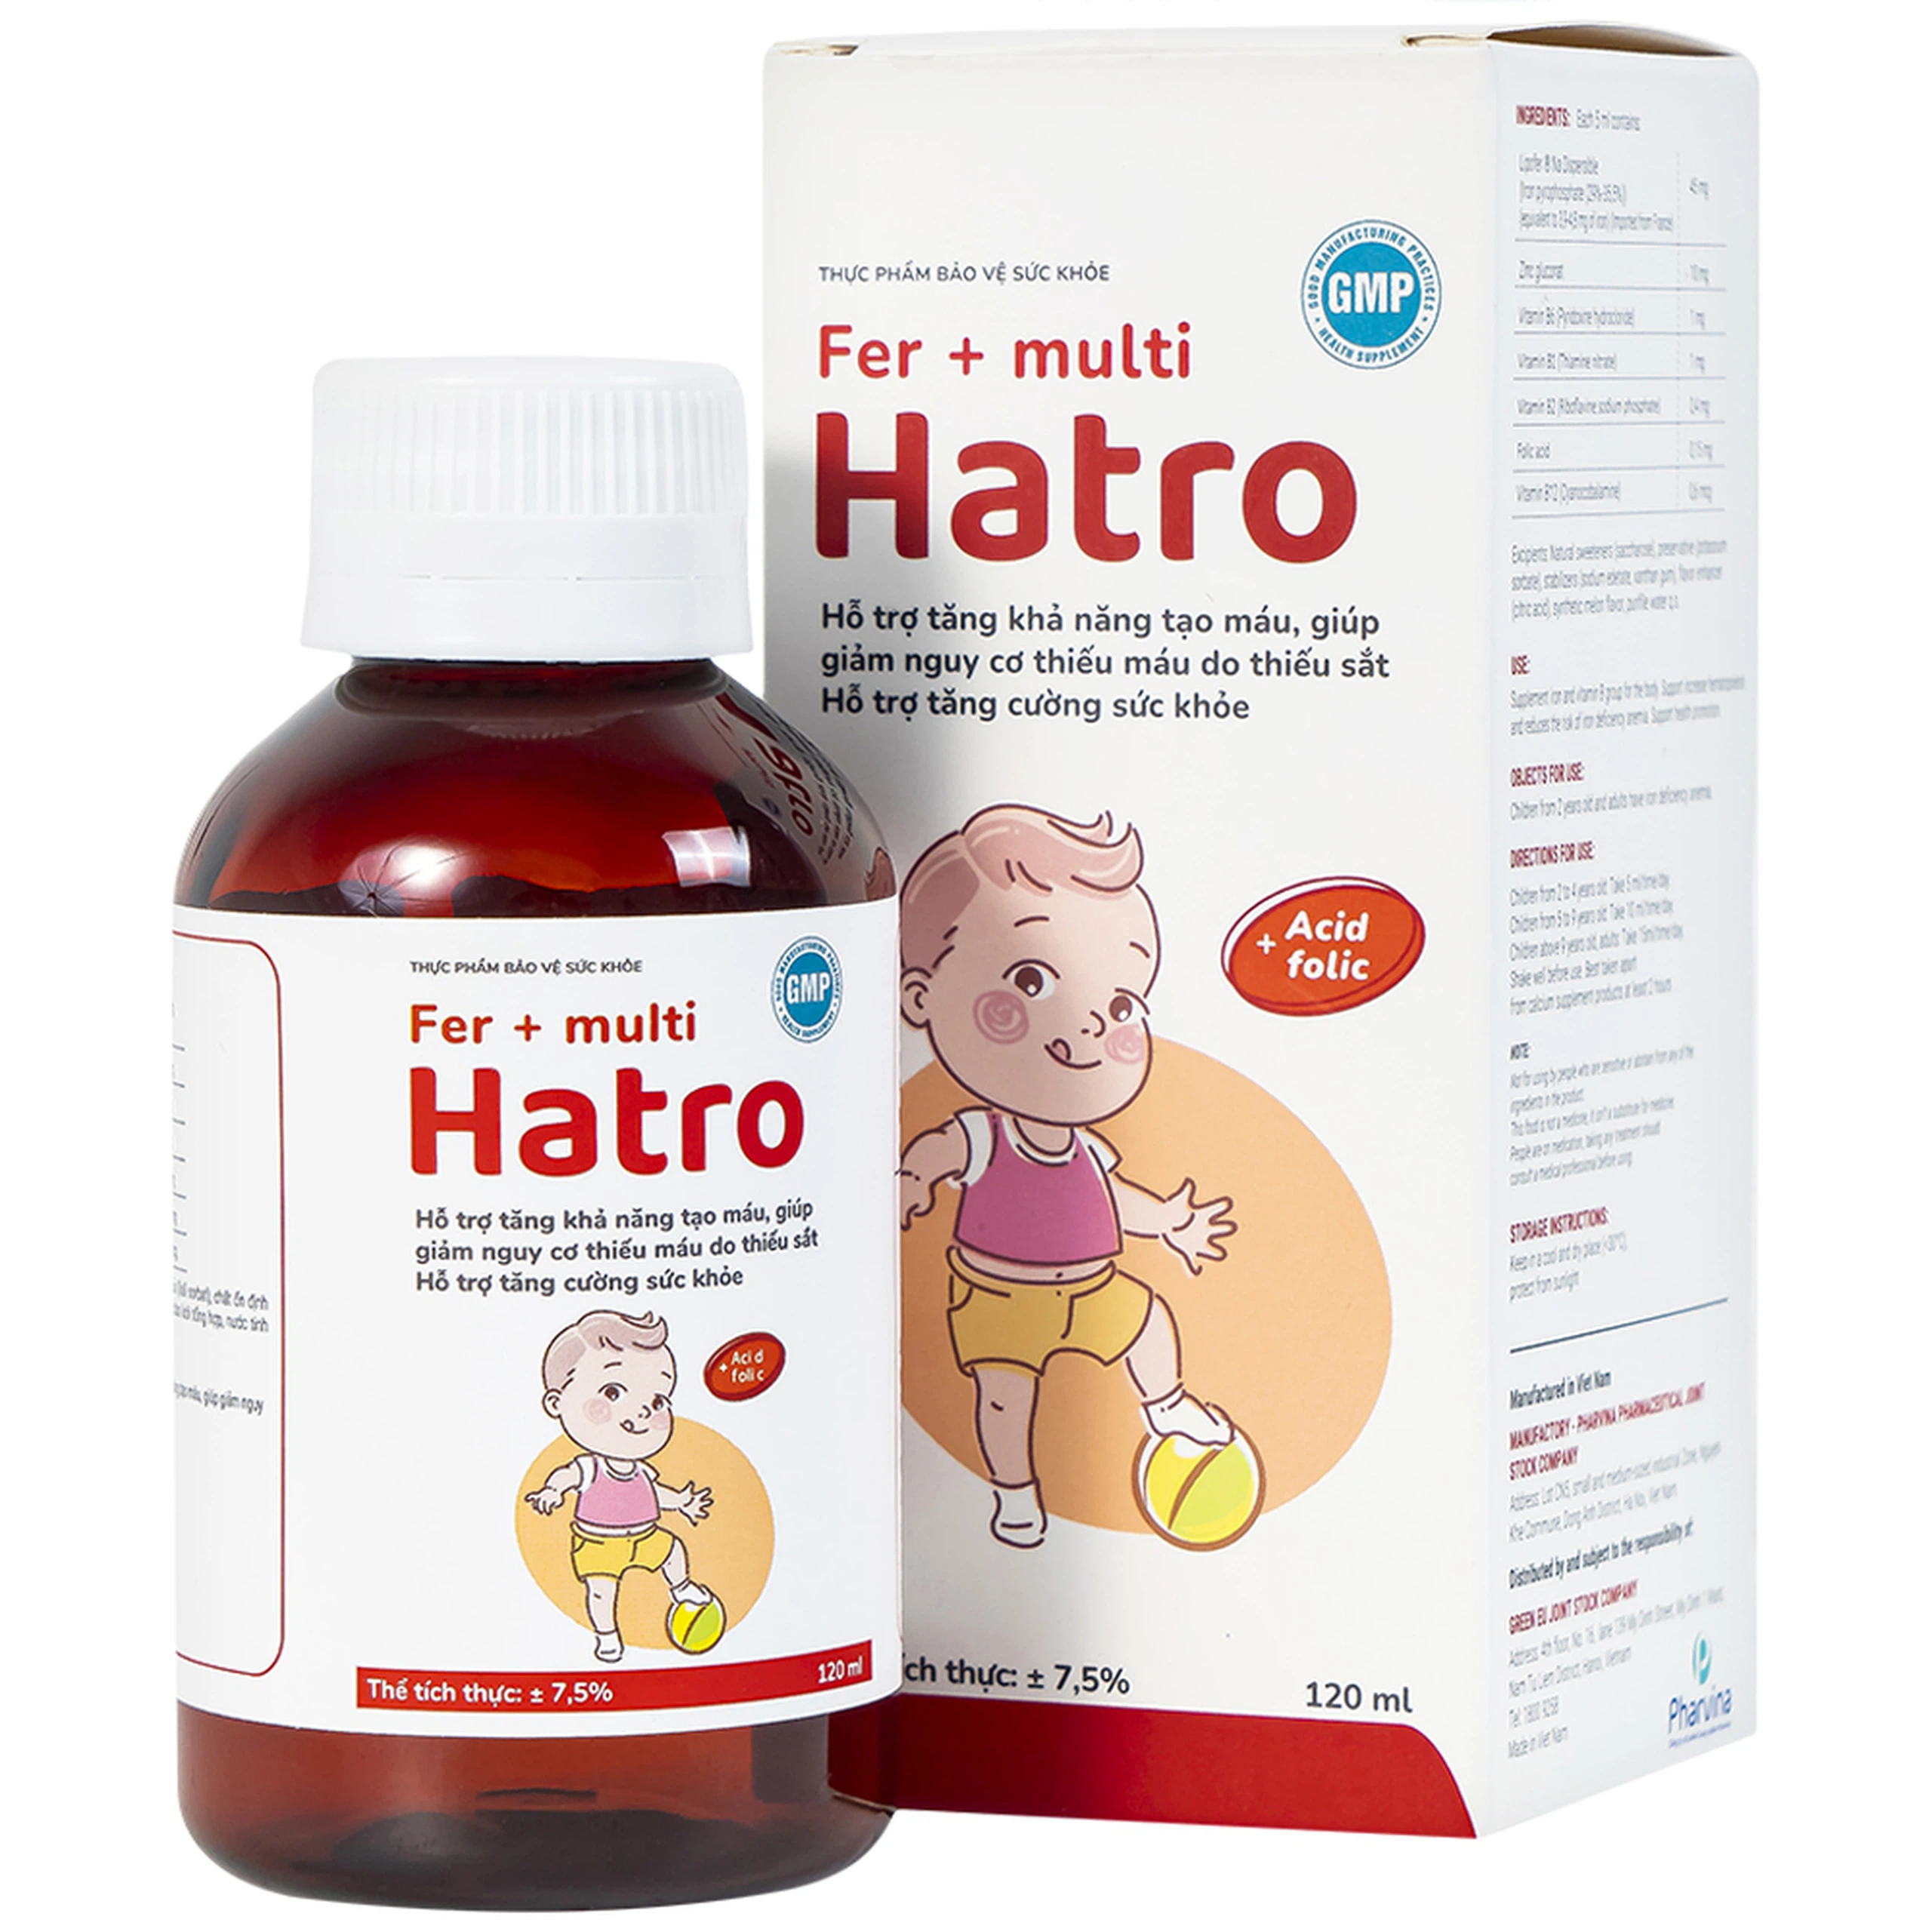 Siro Fer + Multi Hatro bổ sung sắt và Vitamin nhóm B cho cơ thể (120ml)